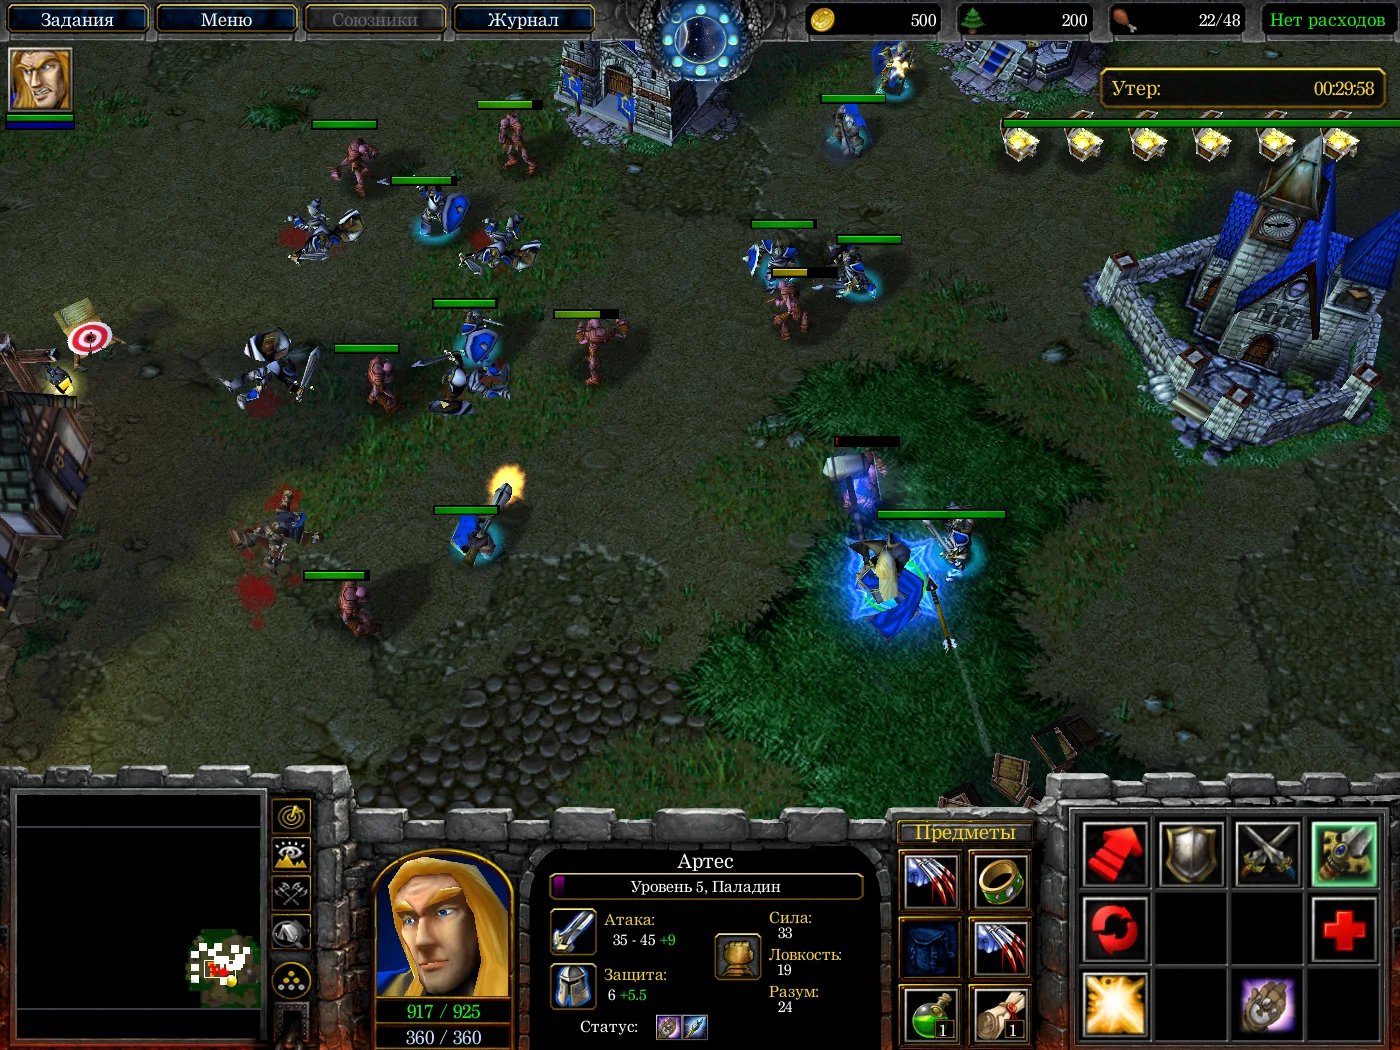 Мнение. Warcraft III гораздо лучше работает как RPG, чем стратегия - фото 1